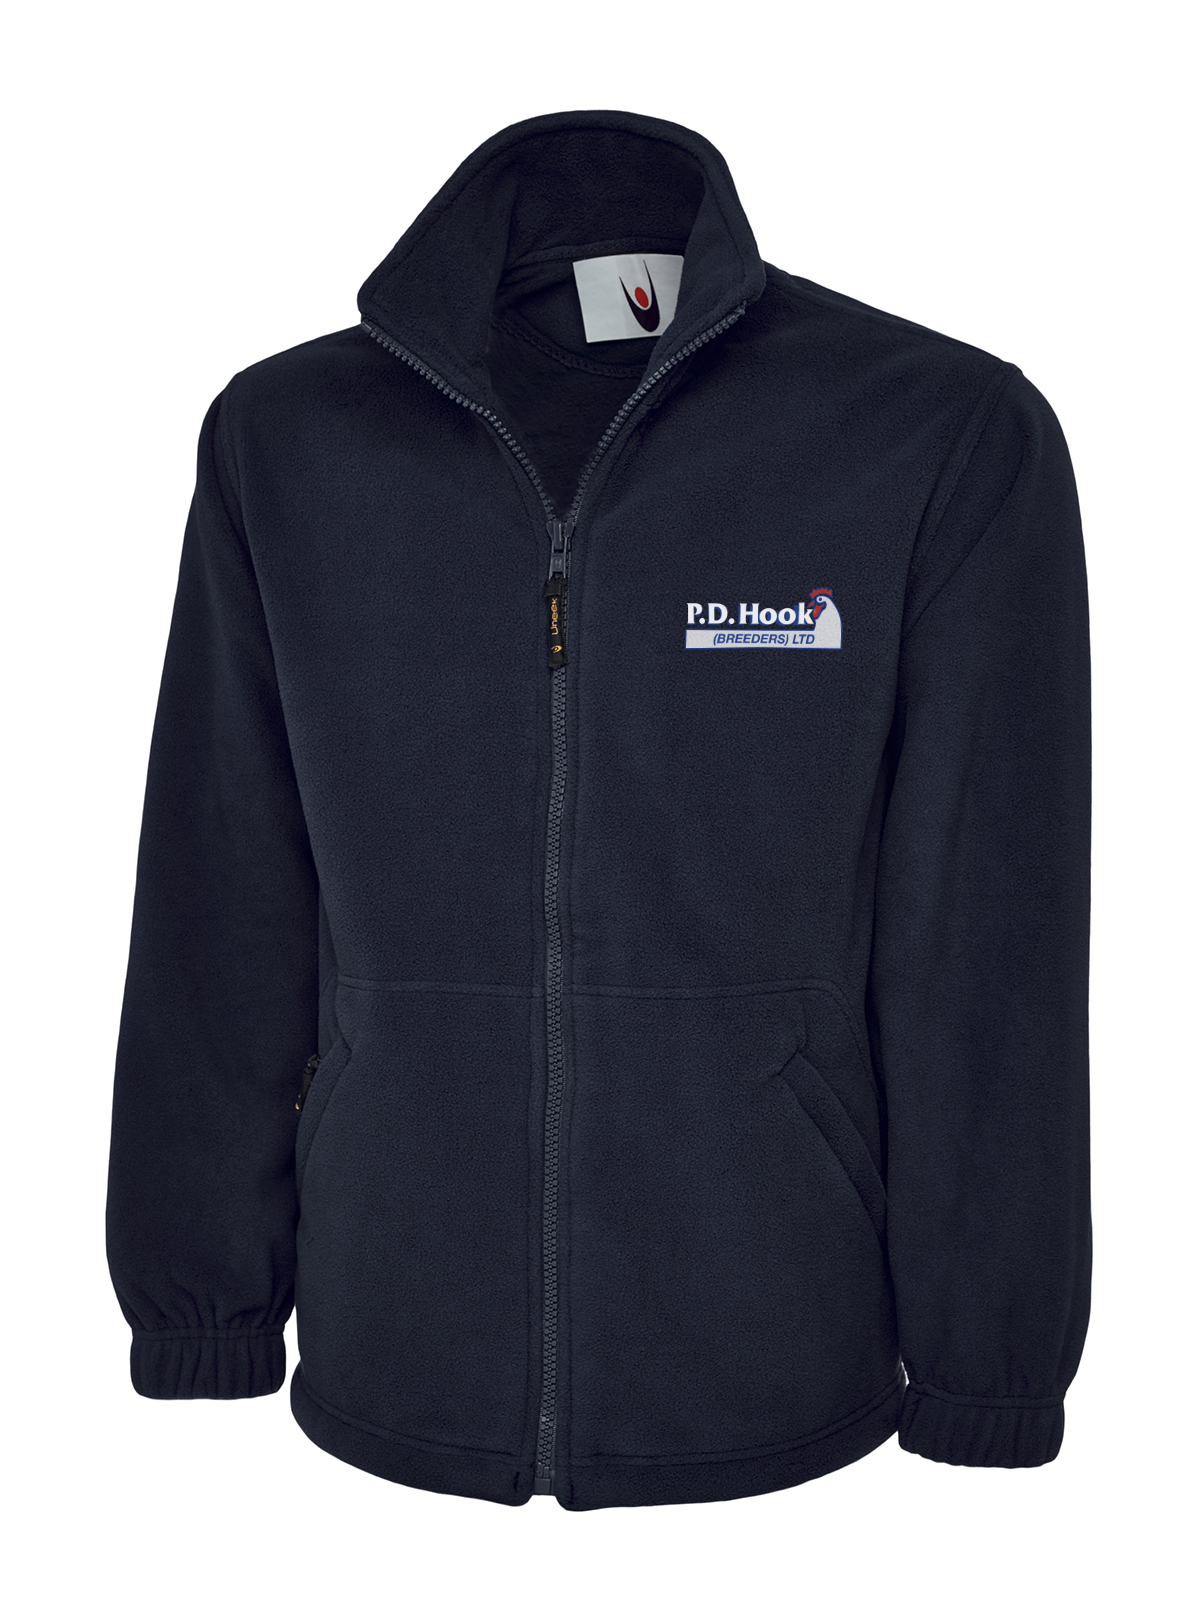 P D Hook (Breeders) Ltd - Full Zip Fleece Jacket, Navy - Size Large